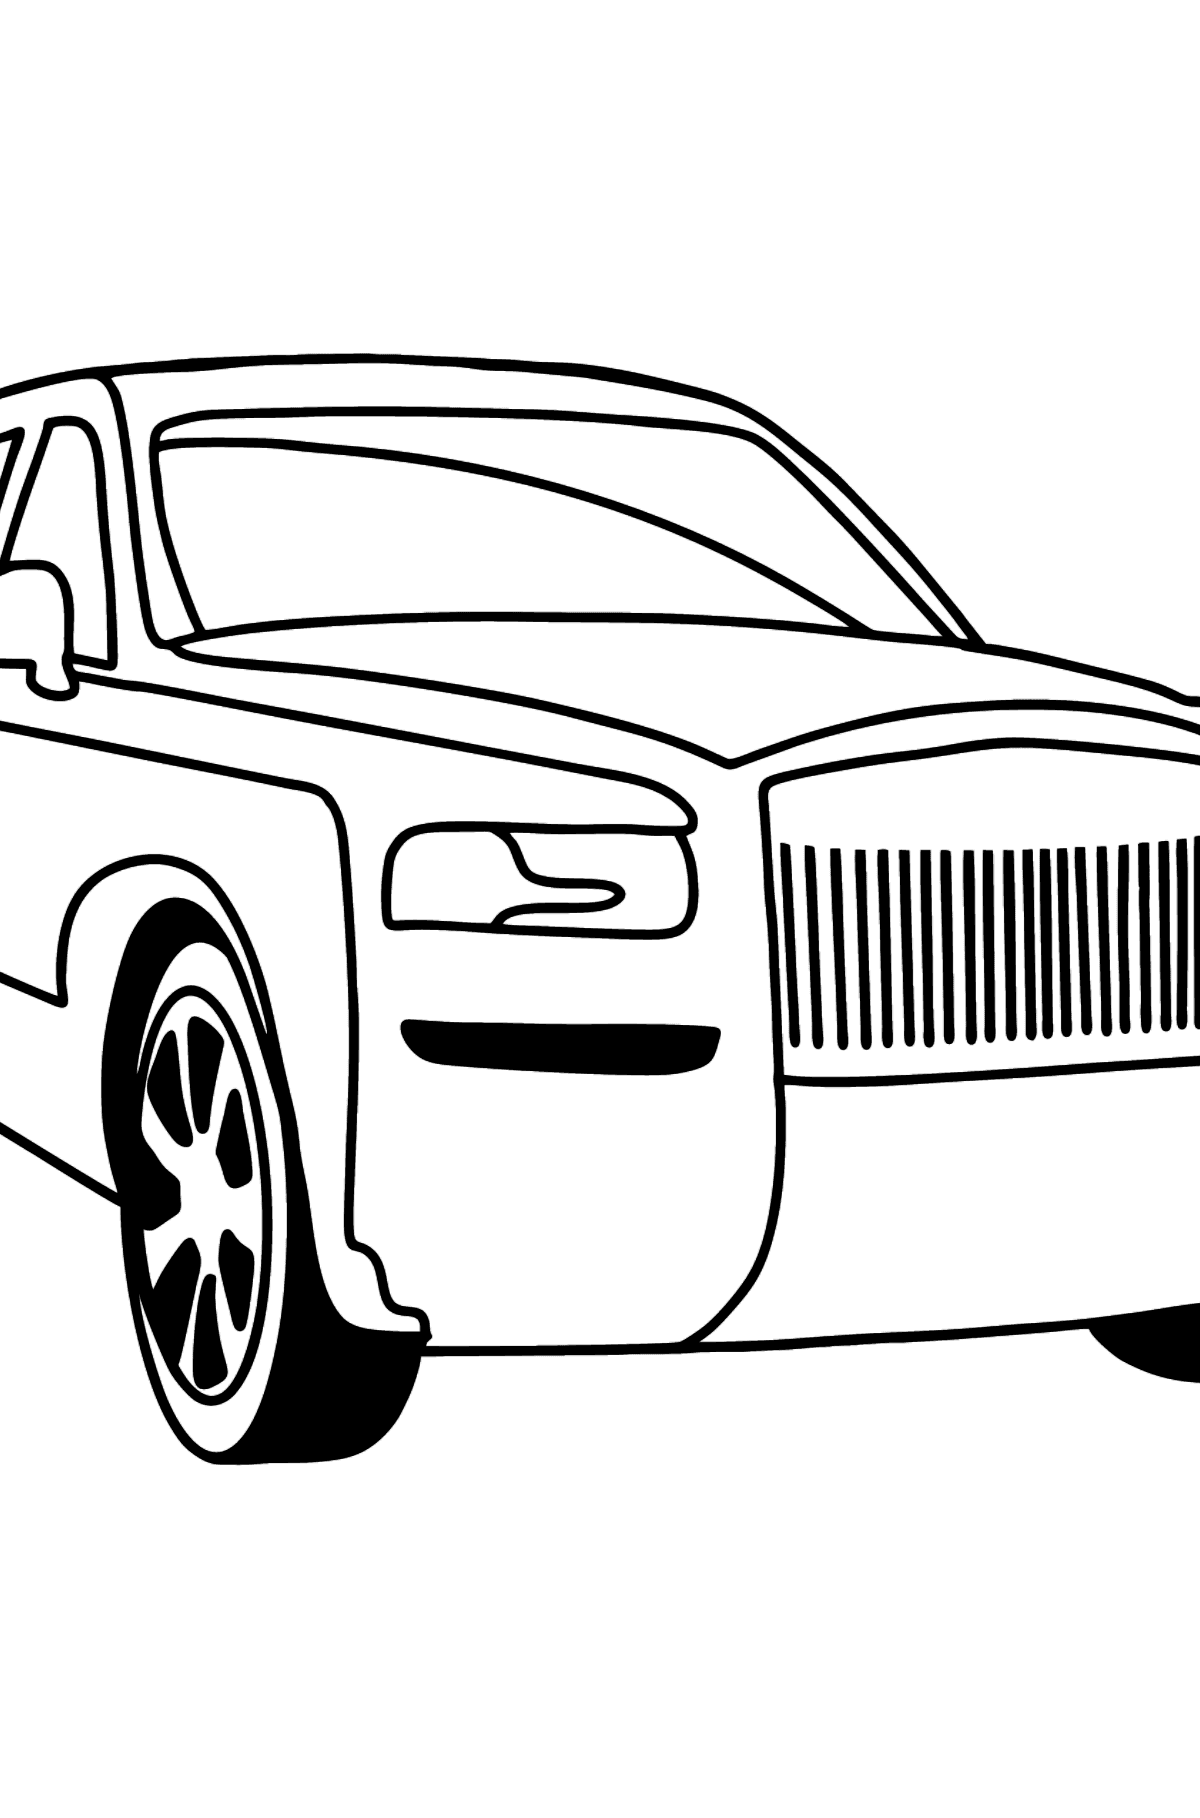 Tegning til farvning Rolls Royce Cullinan bil - Tegninger til farvelægning for børn